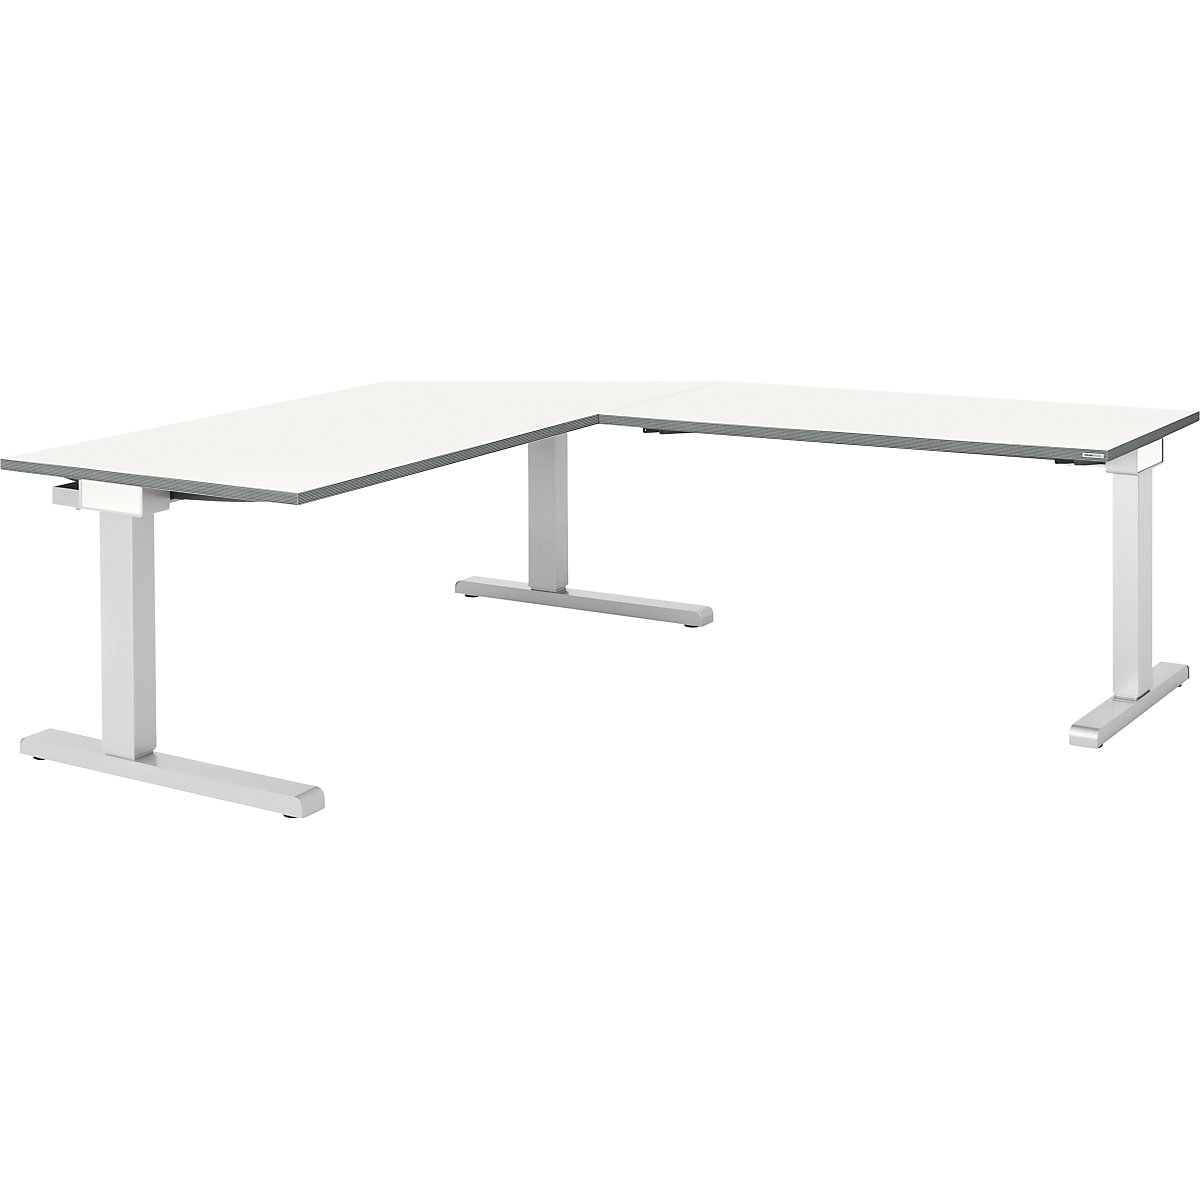 Pisači stol, povezani – mauser, ŠxD 1600 x 800 mm, kutni priključak s desne strane (širina 1200 mm), ploča u bijeloj boji, postolje u aluminij srebrnoj boji-3